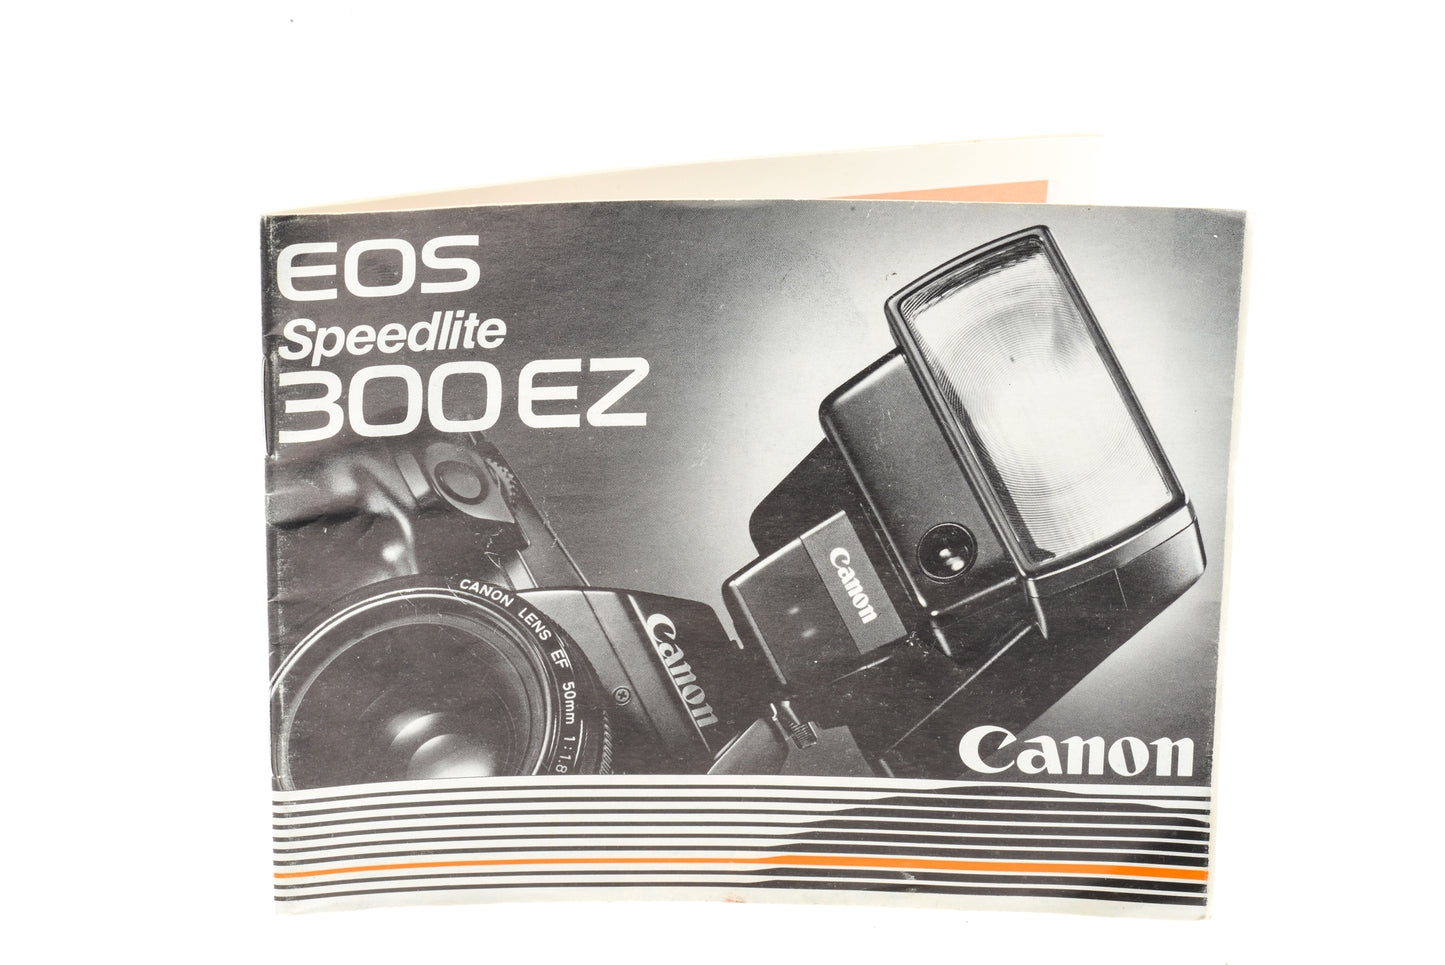 Canon Speedlite 300EZ Instructions